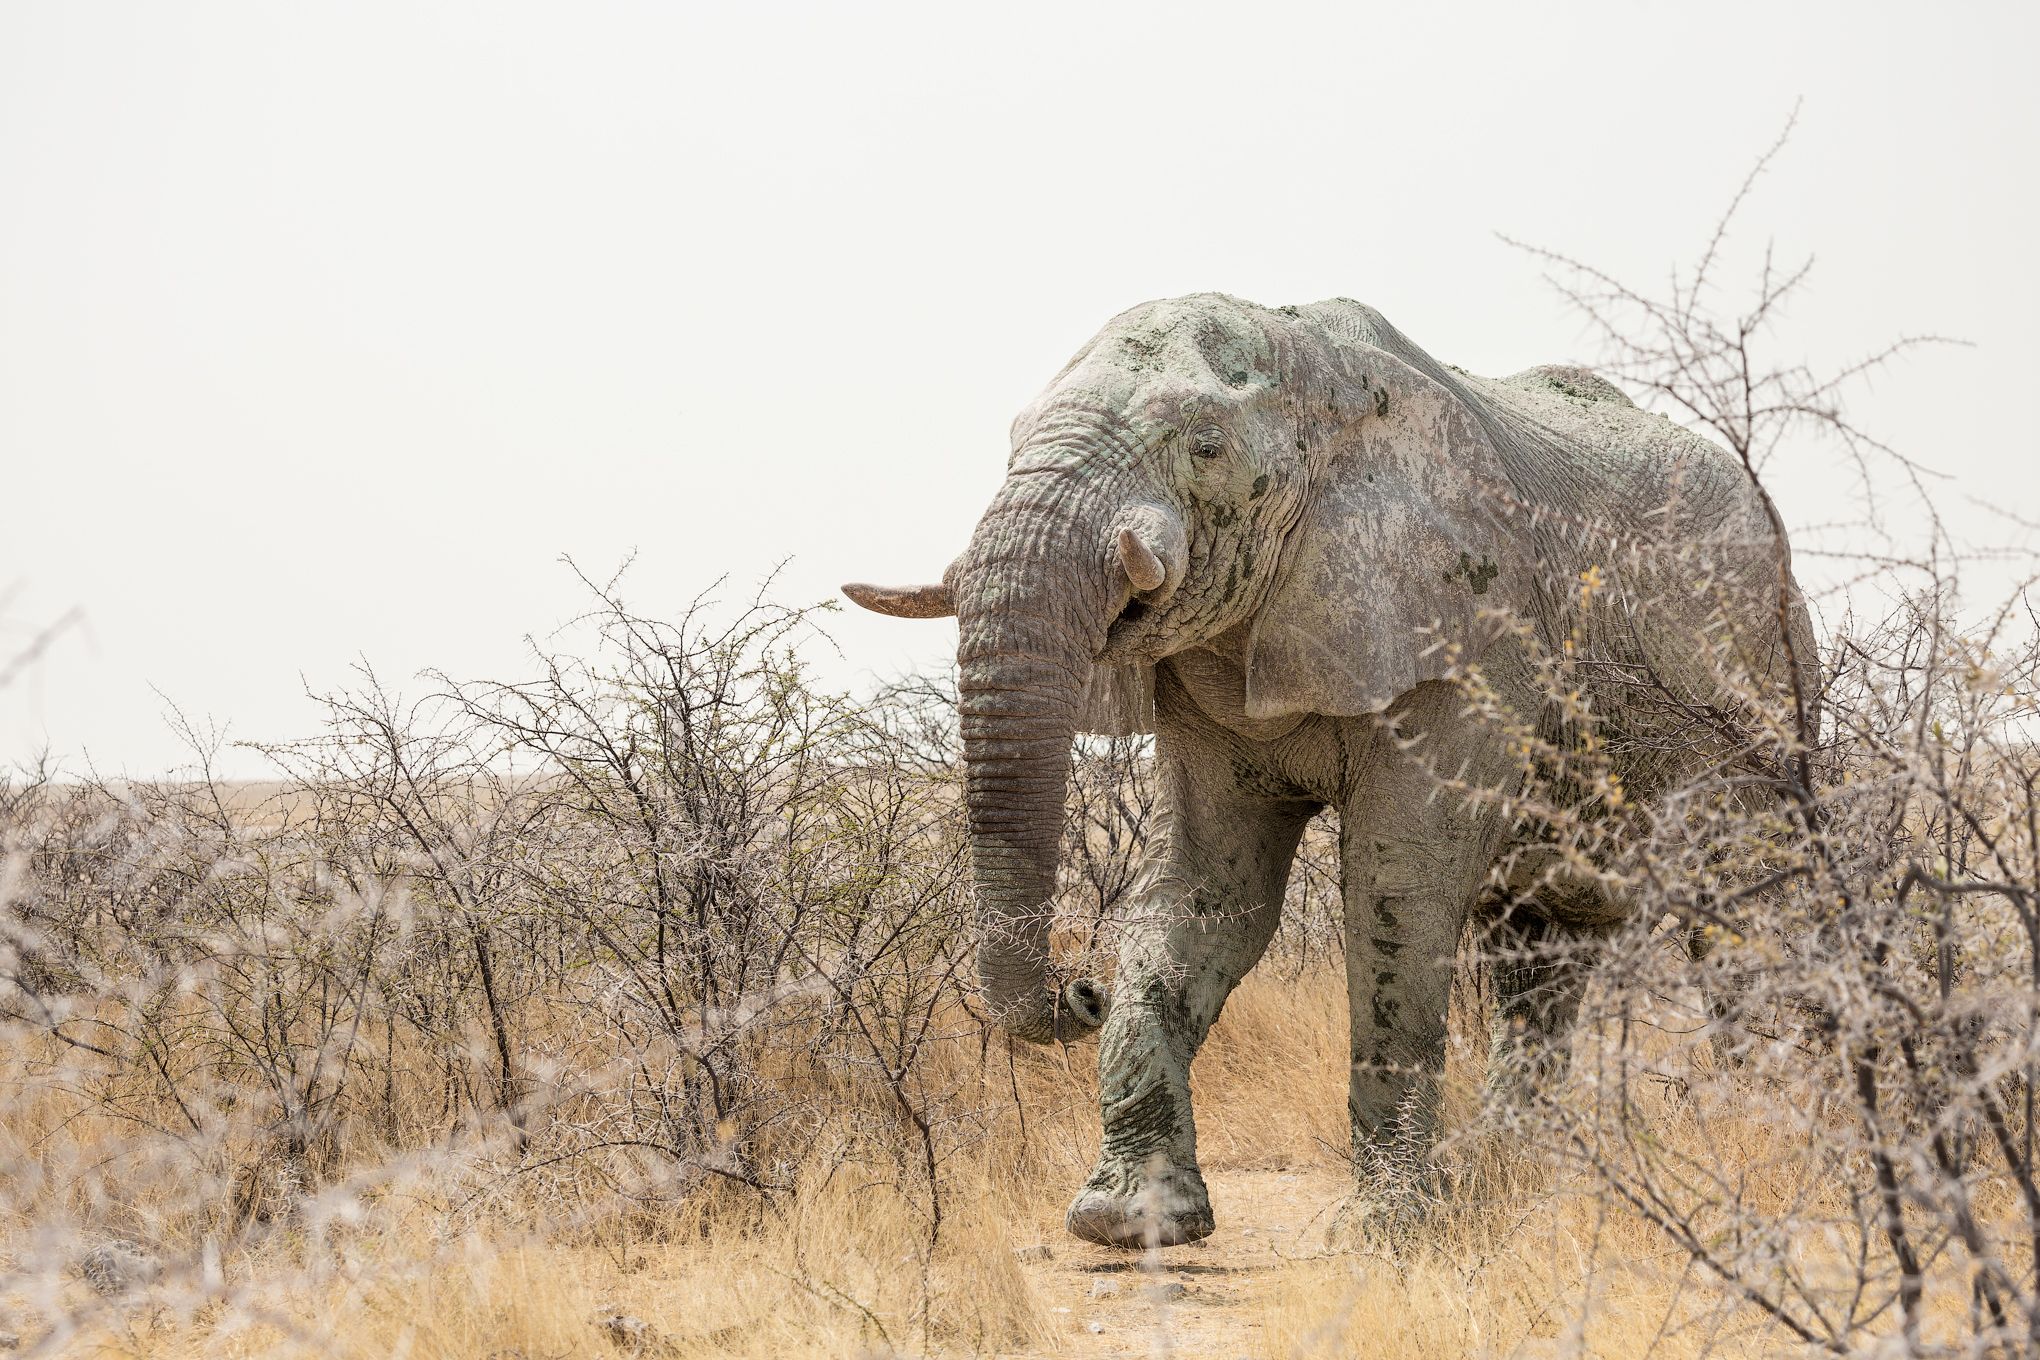 #Африка #Намибия #Этоша #слон #Africa #Namibia #Etosha #elephant #животные #animal, Наталия Деркач